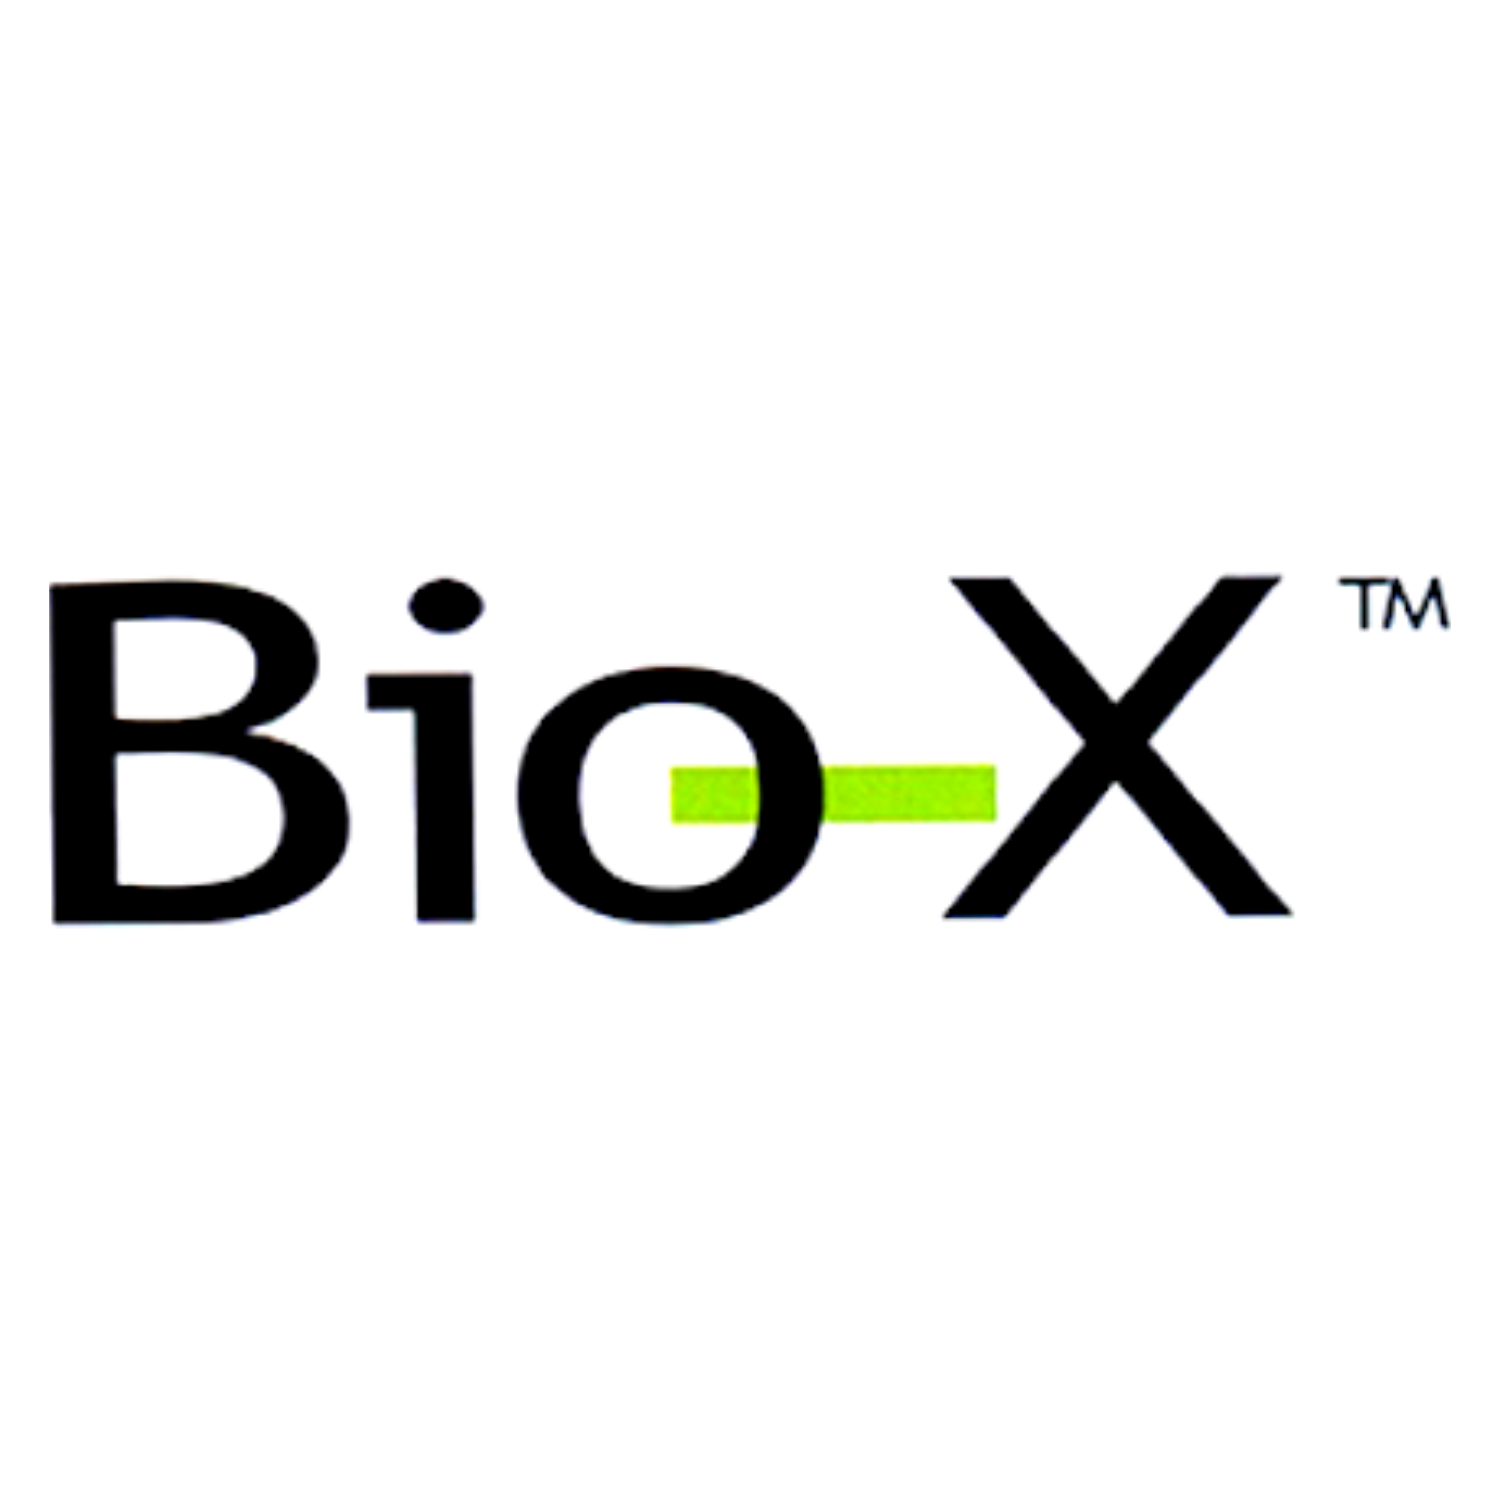 Bio-X